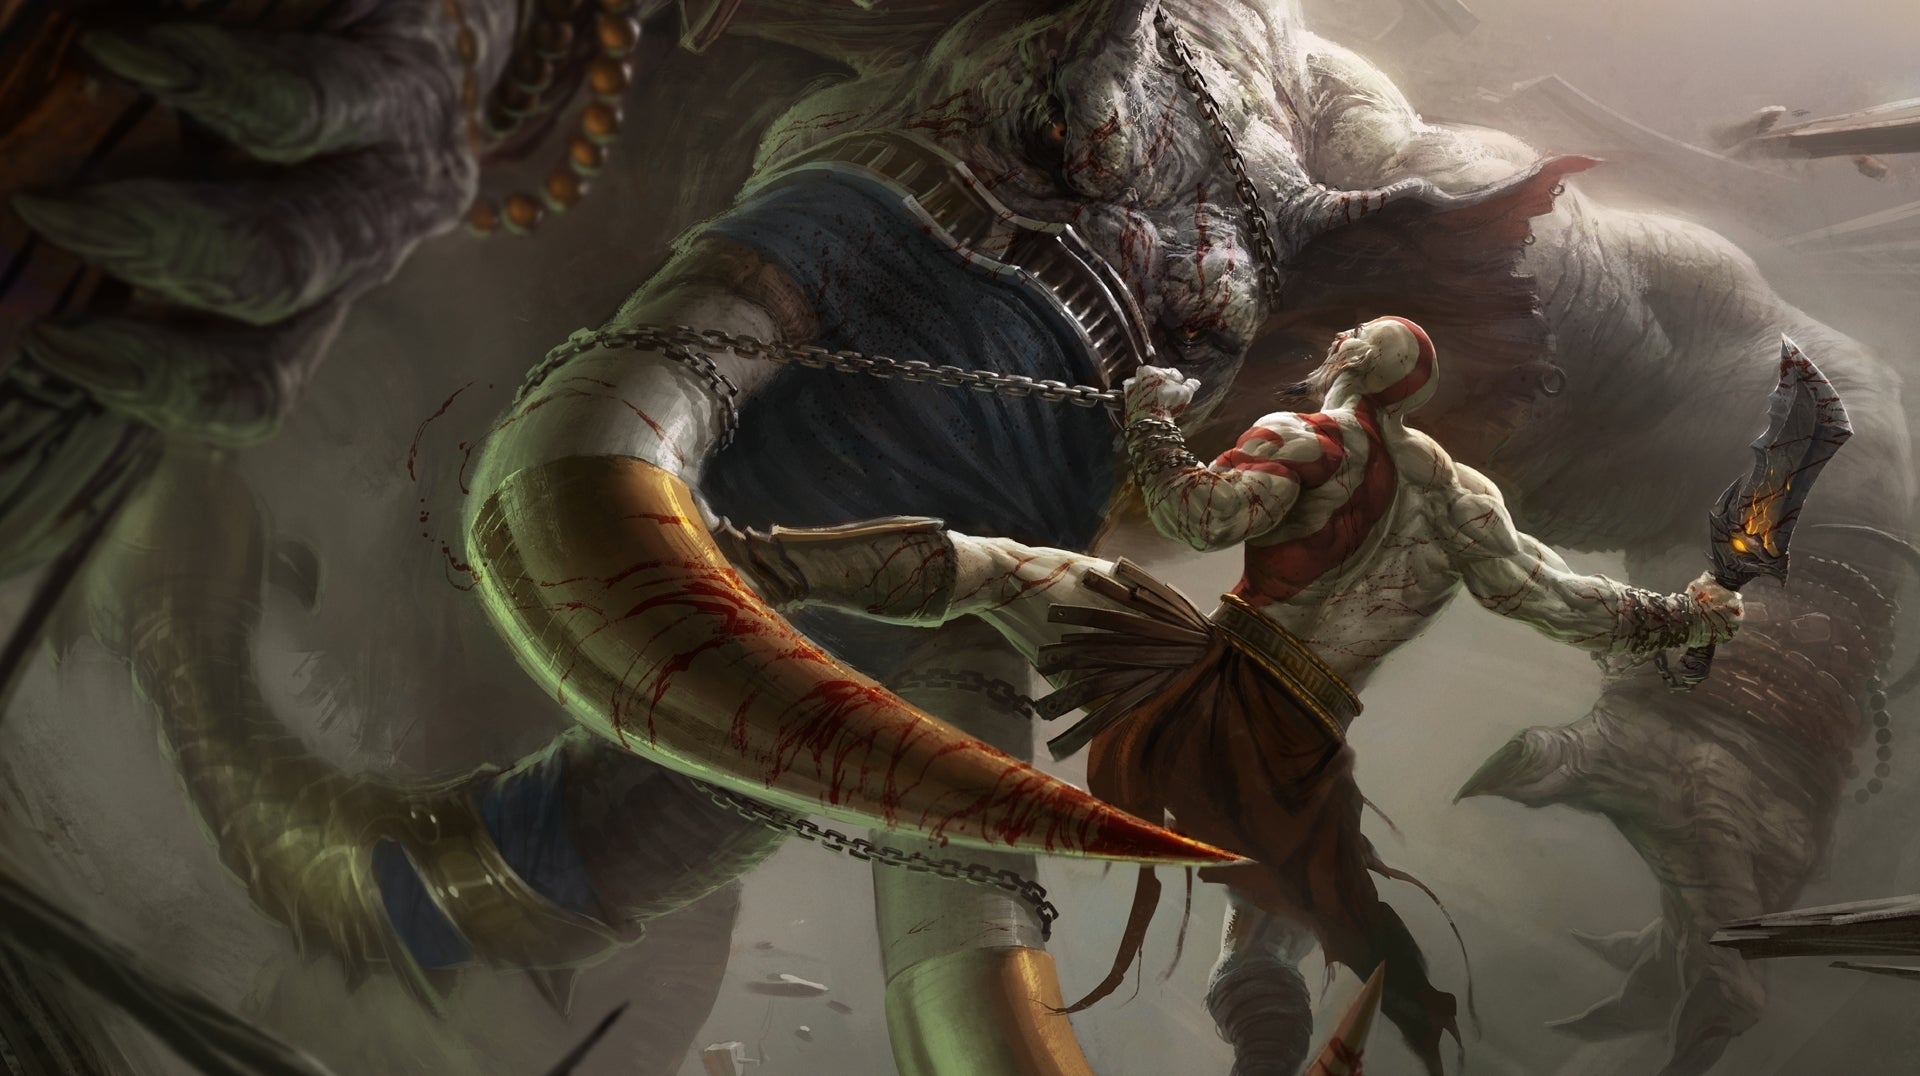 Immagine di God of War: Ascension ha incassato oltre 100 milioni di dollari e distribuito 3 milioni di copie